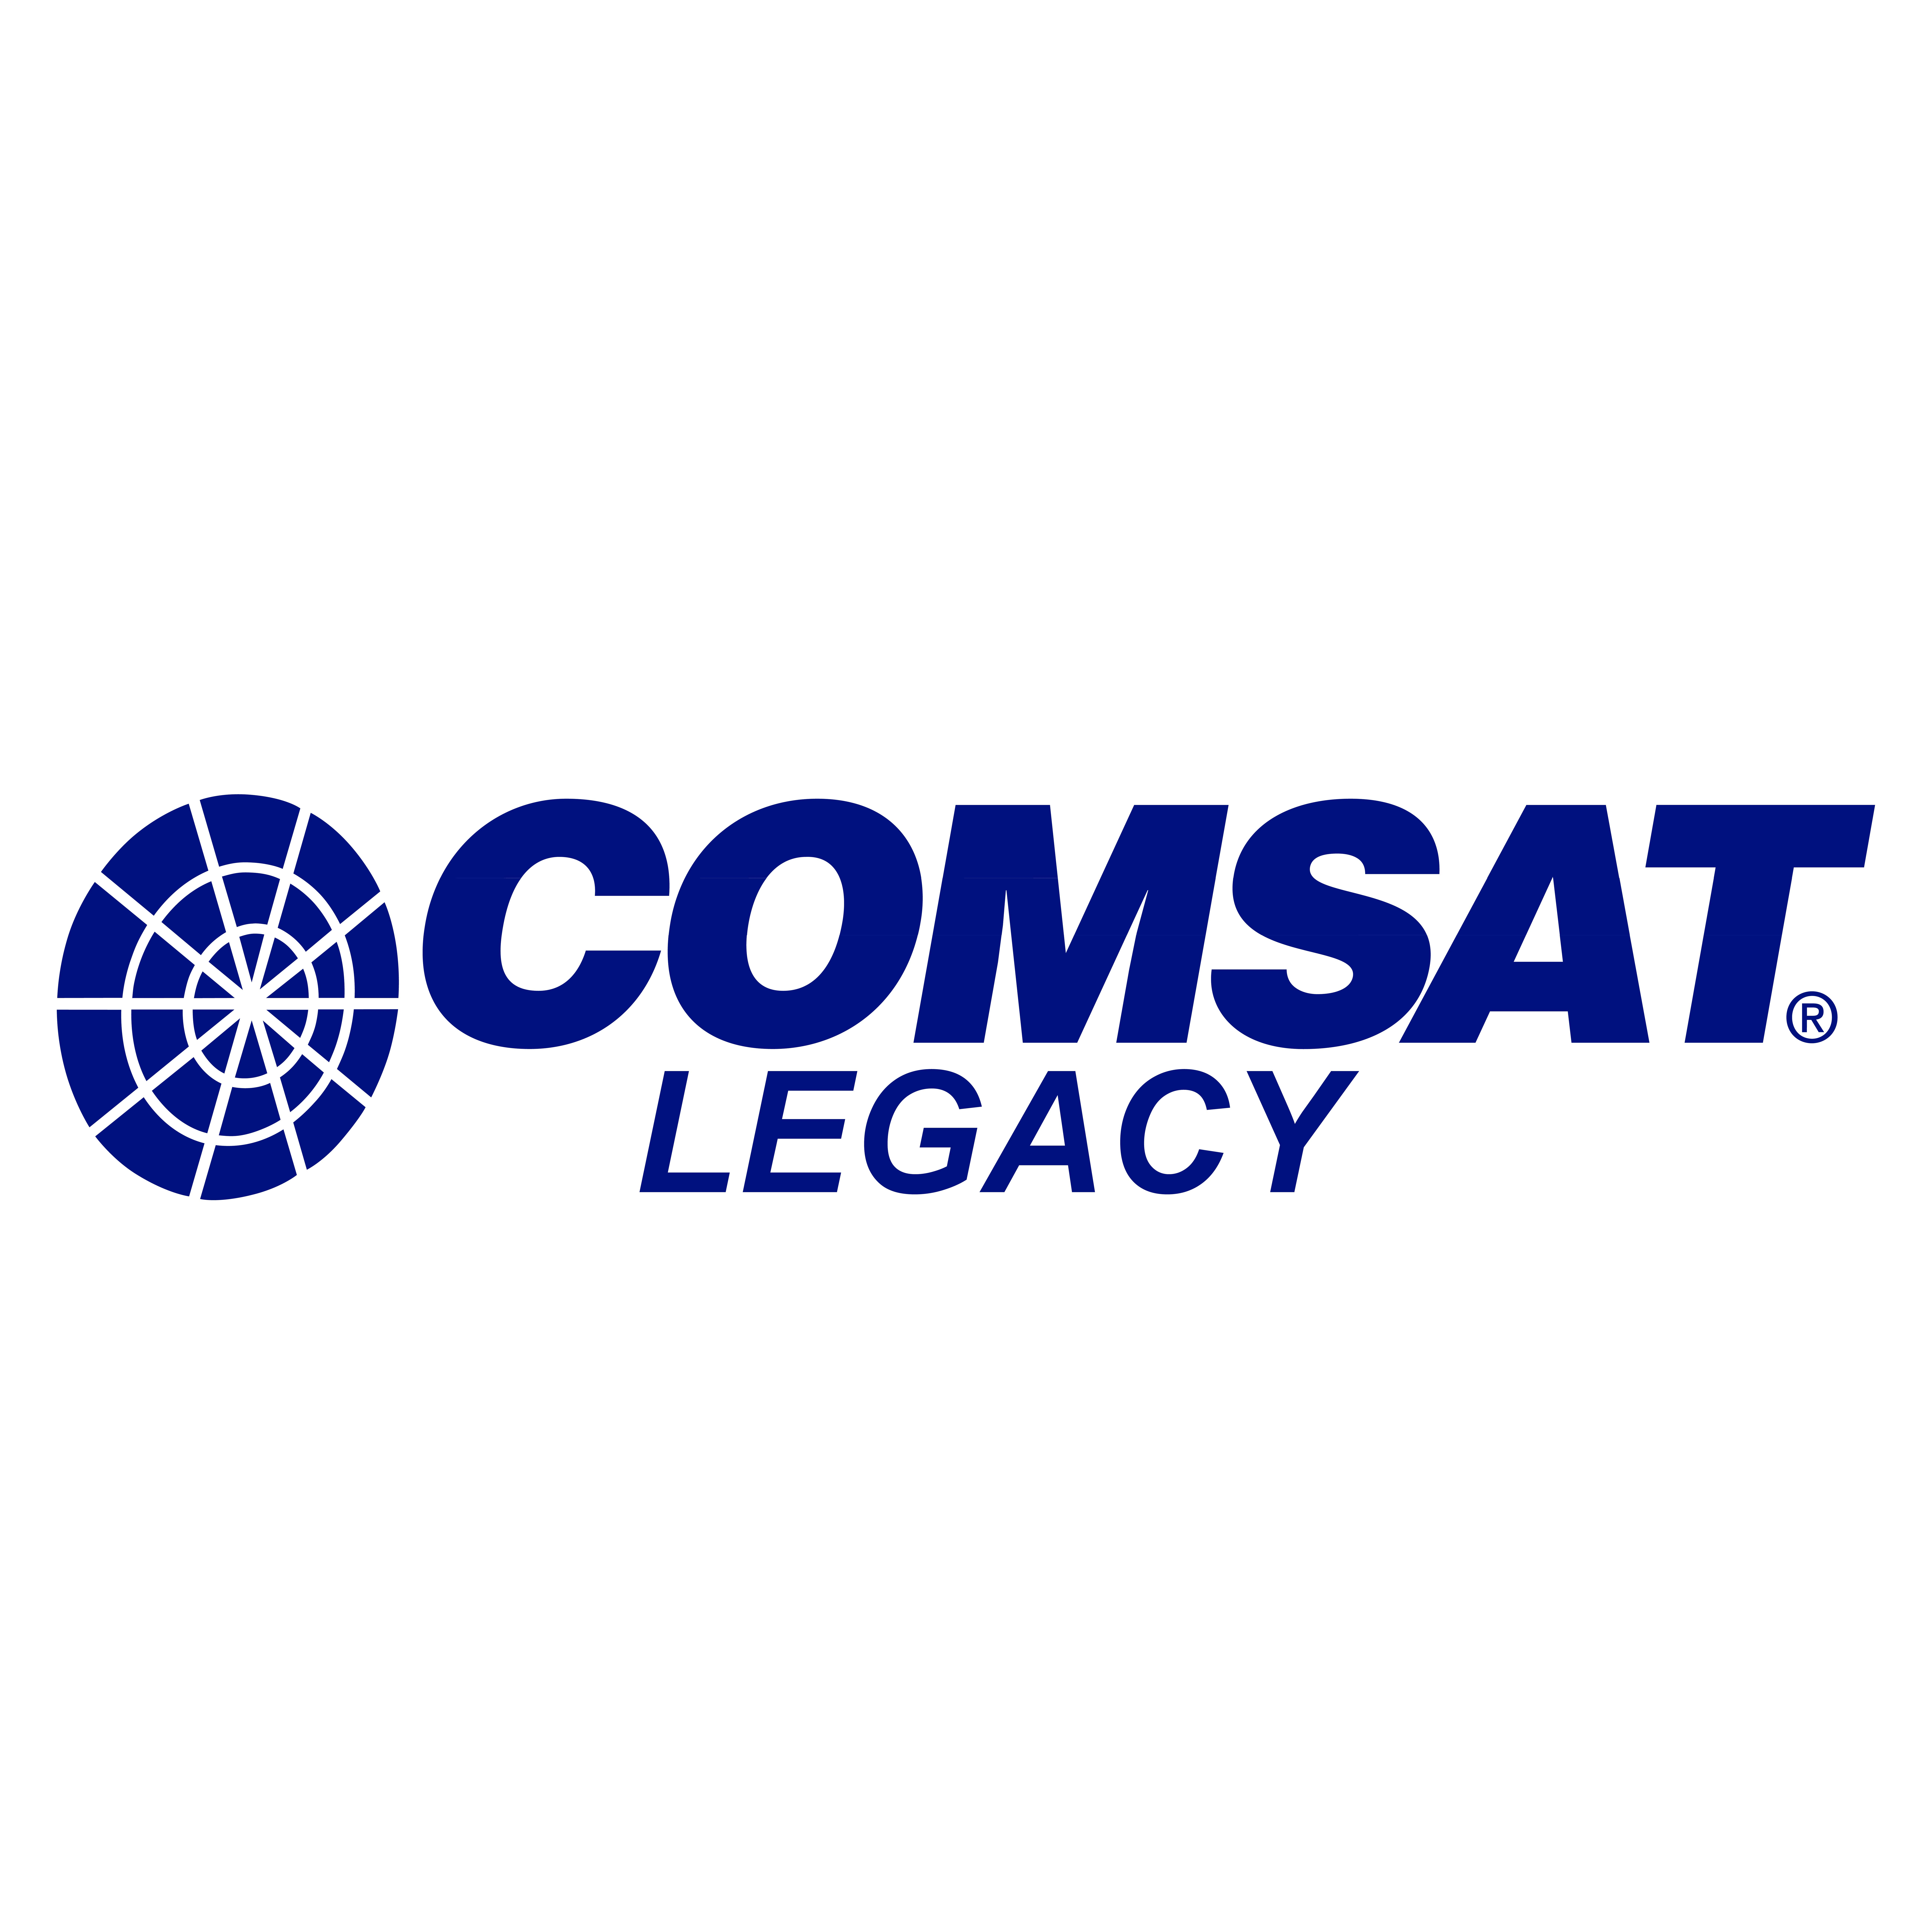 COMSAT-Legacy-00117F.jpg